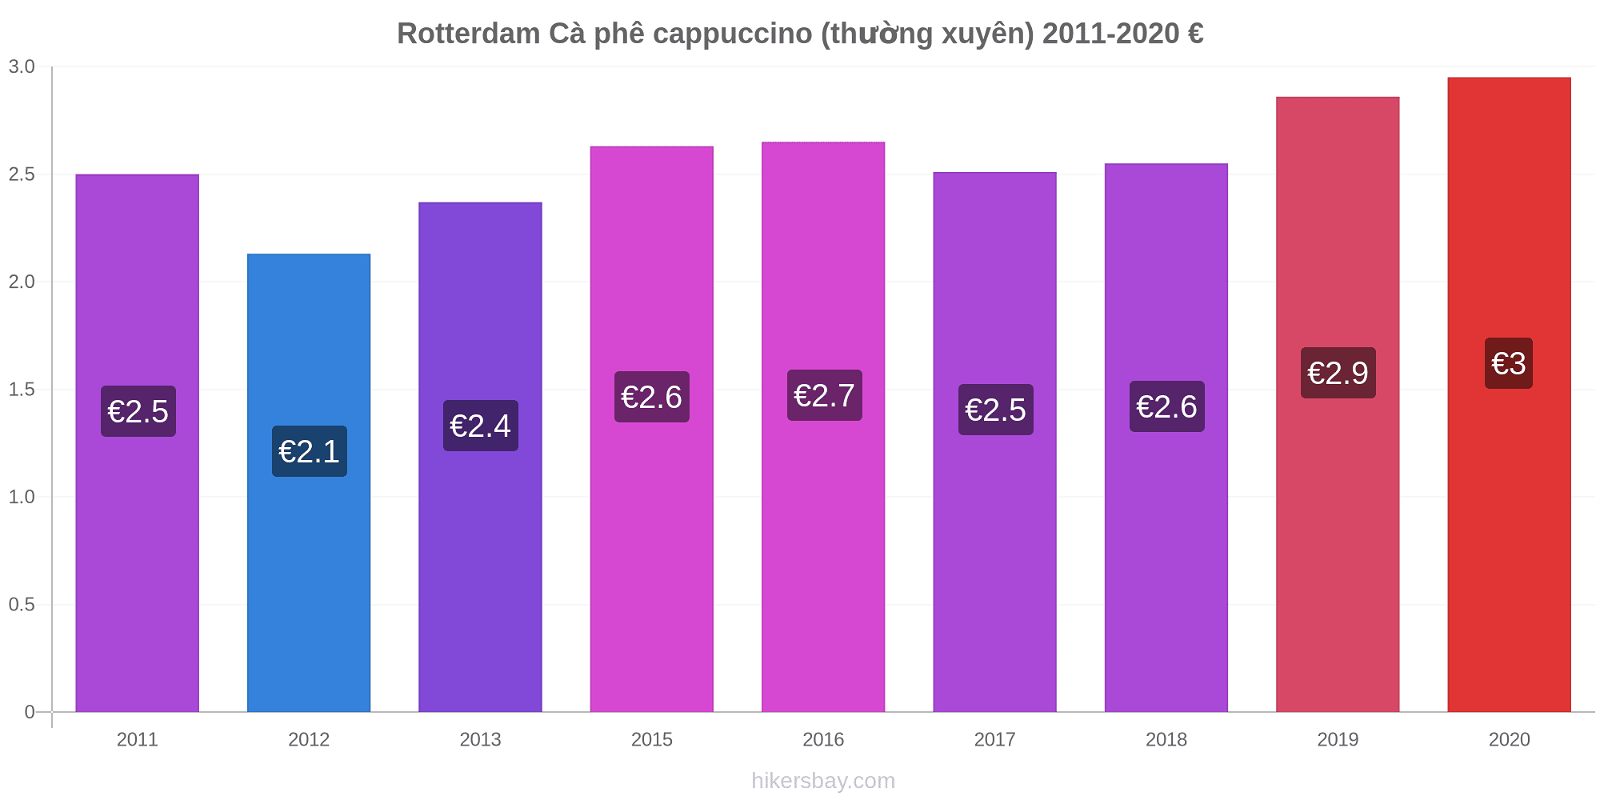 Rotterdam thay đổi giá Cà phê cappuccino (thường xuyên) hikersbay.com